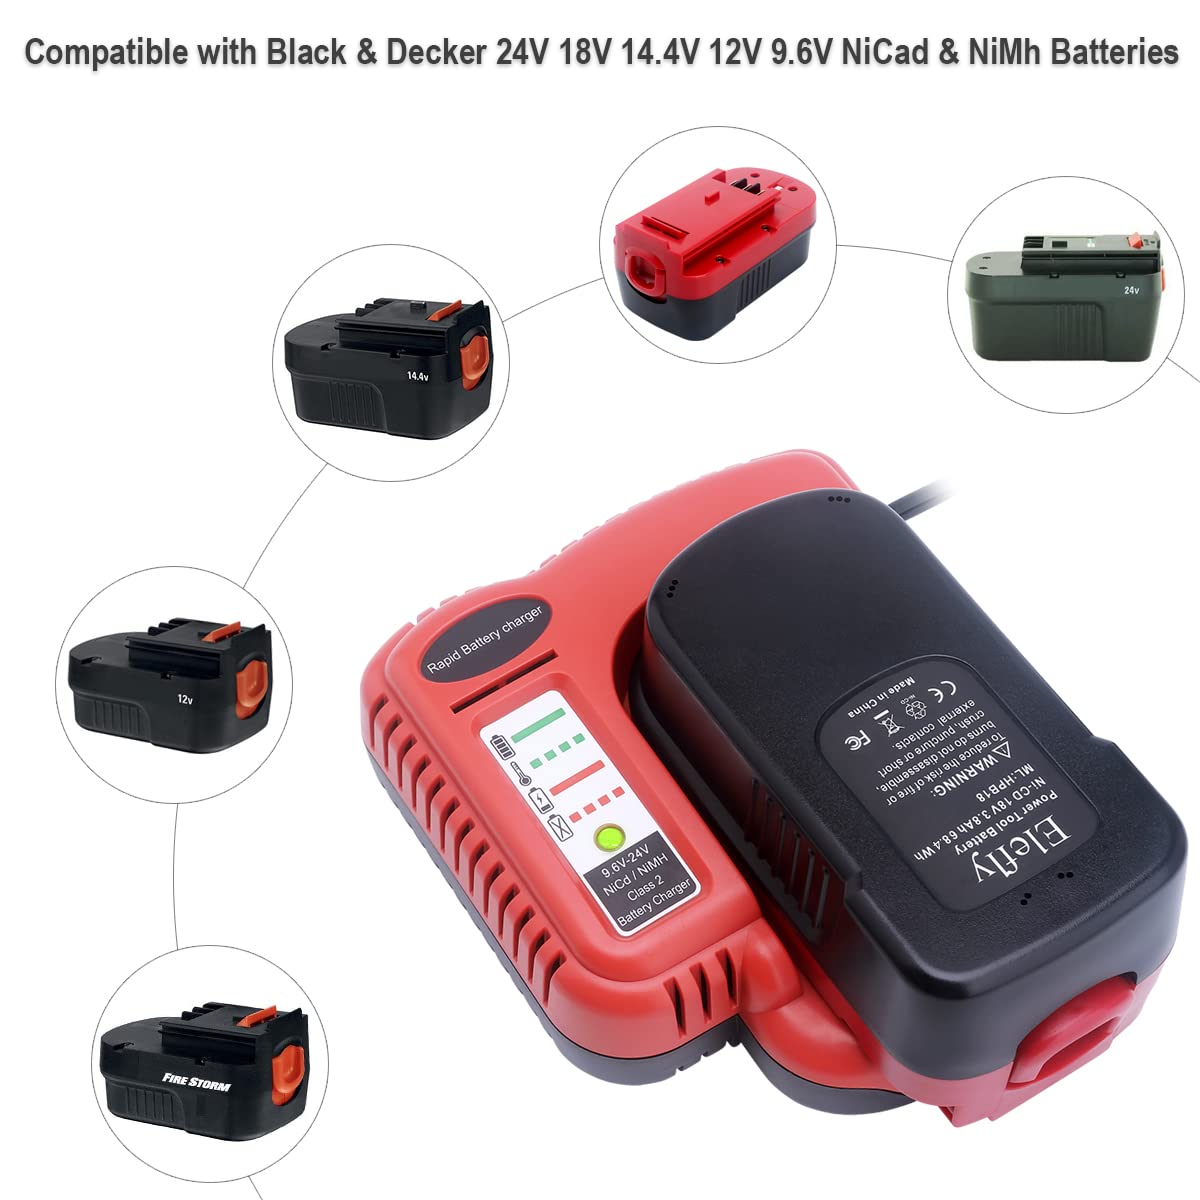 Elefly BDFC240 Battery Charger Compatible with Black and Decker 18V 14.4V 12V 9.6V 24V NiCD NiMH Battery HPB18 HPB18-OPE HPB14 HPB12 HPB96 HPB24, Replacement for Black and Decker 18V Charger